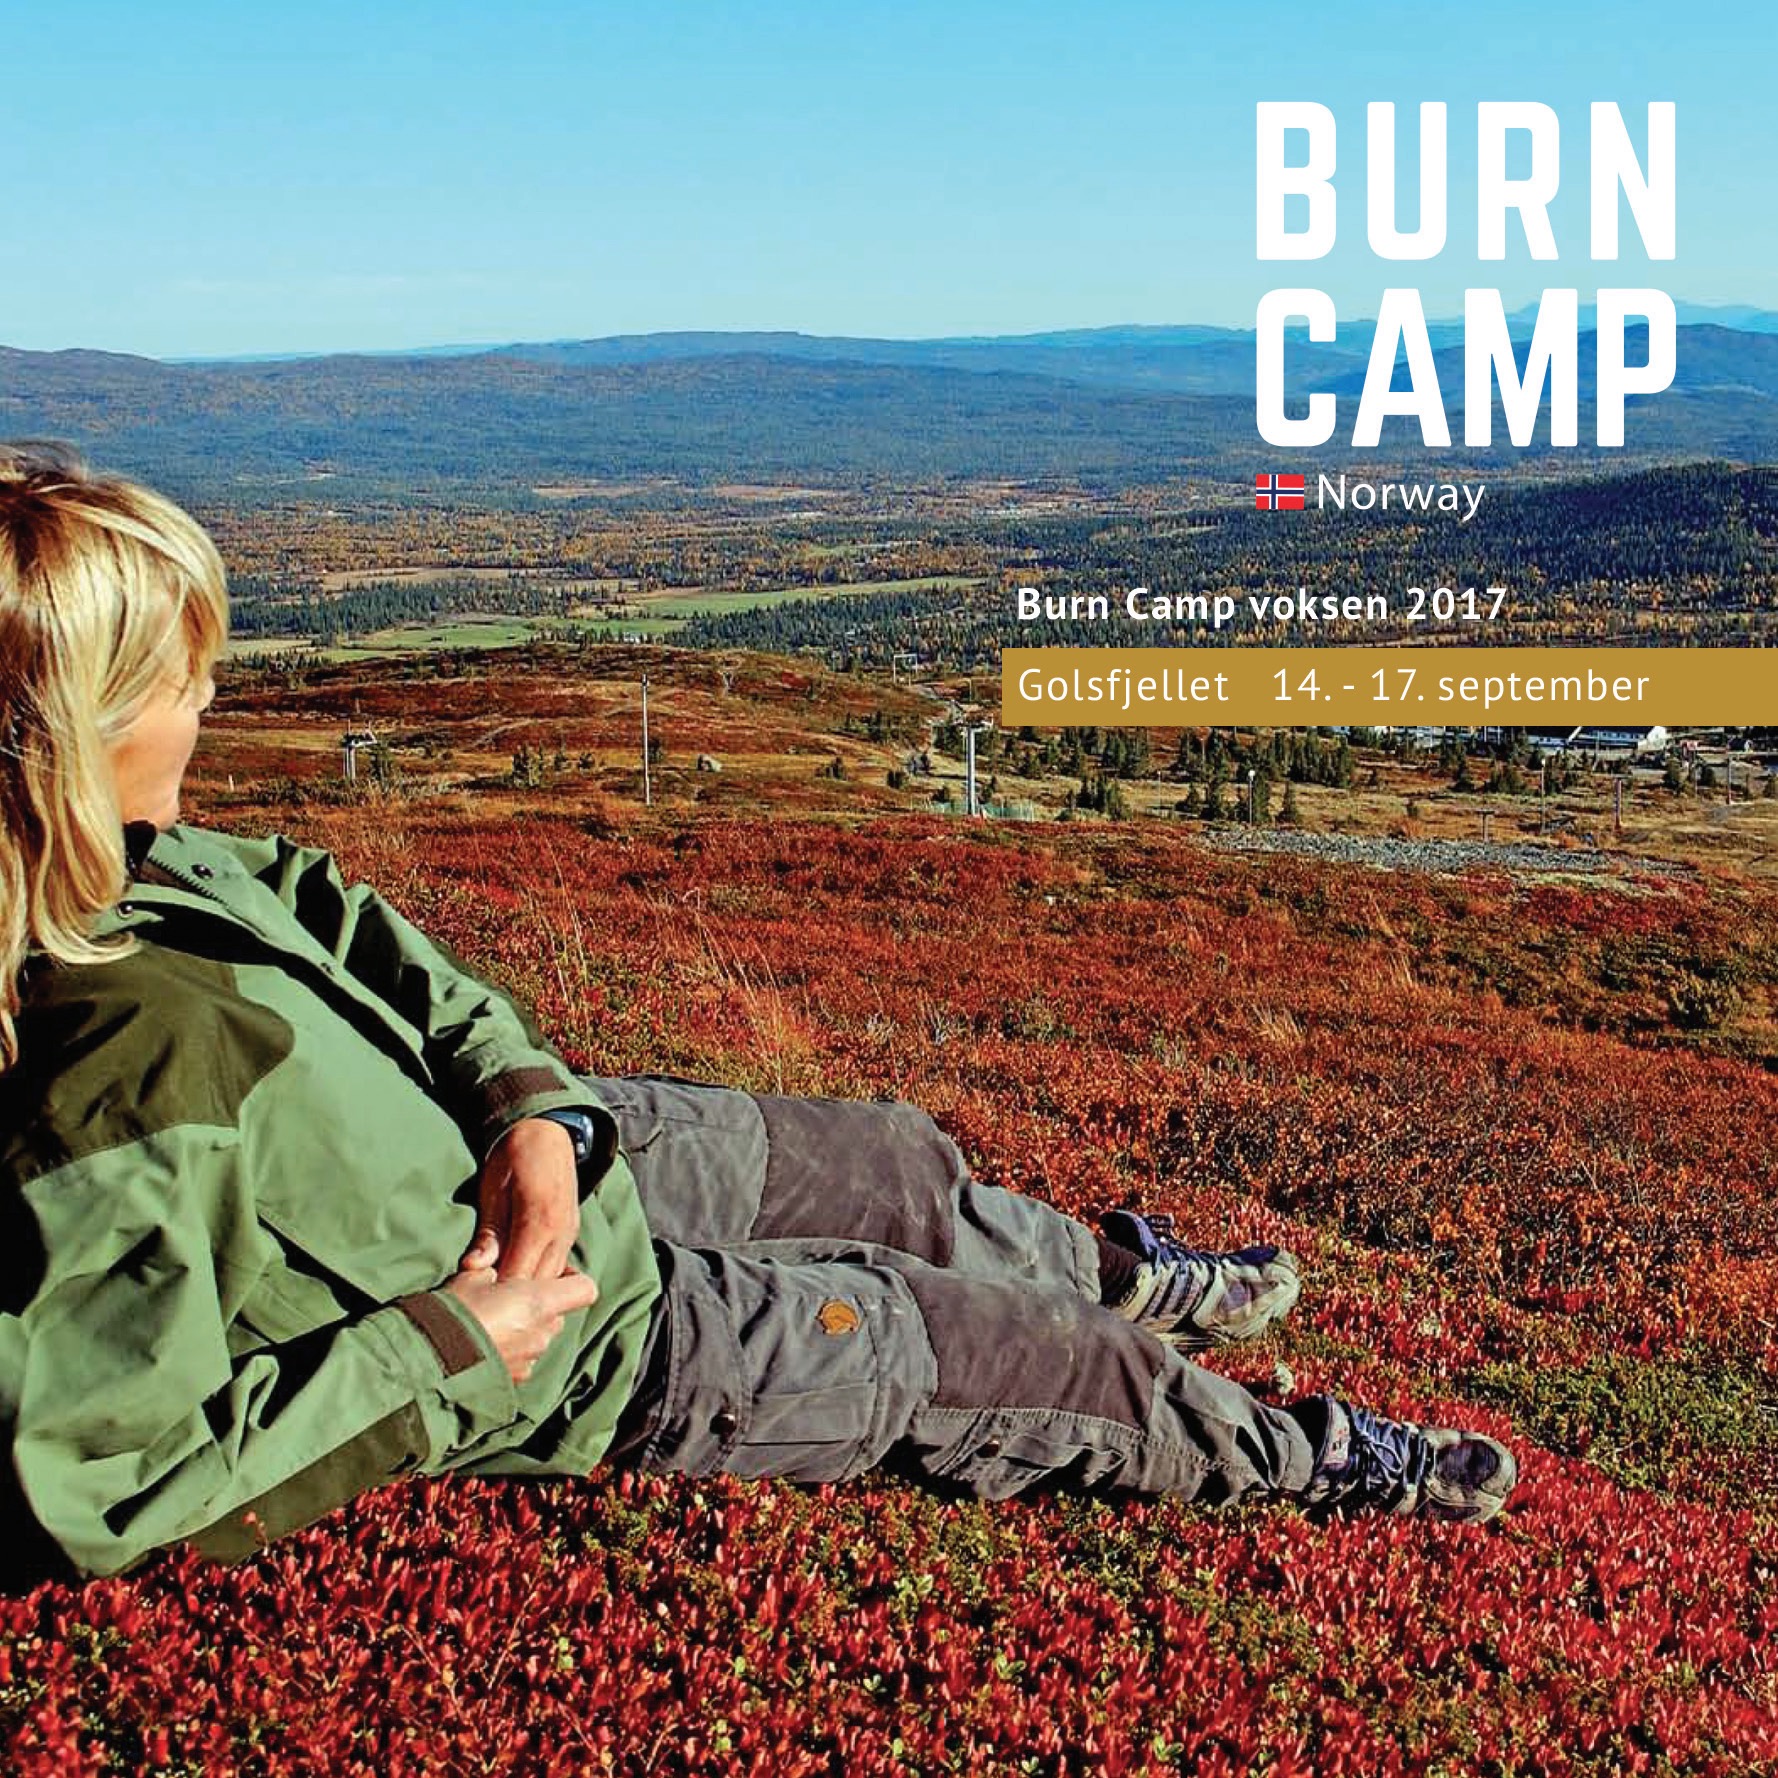 Burn Camp voksen 2017